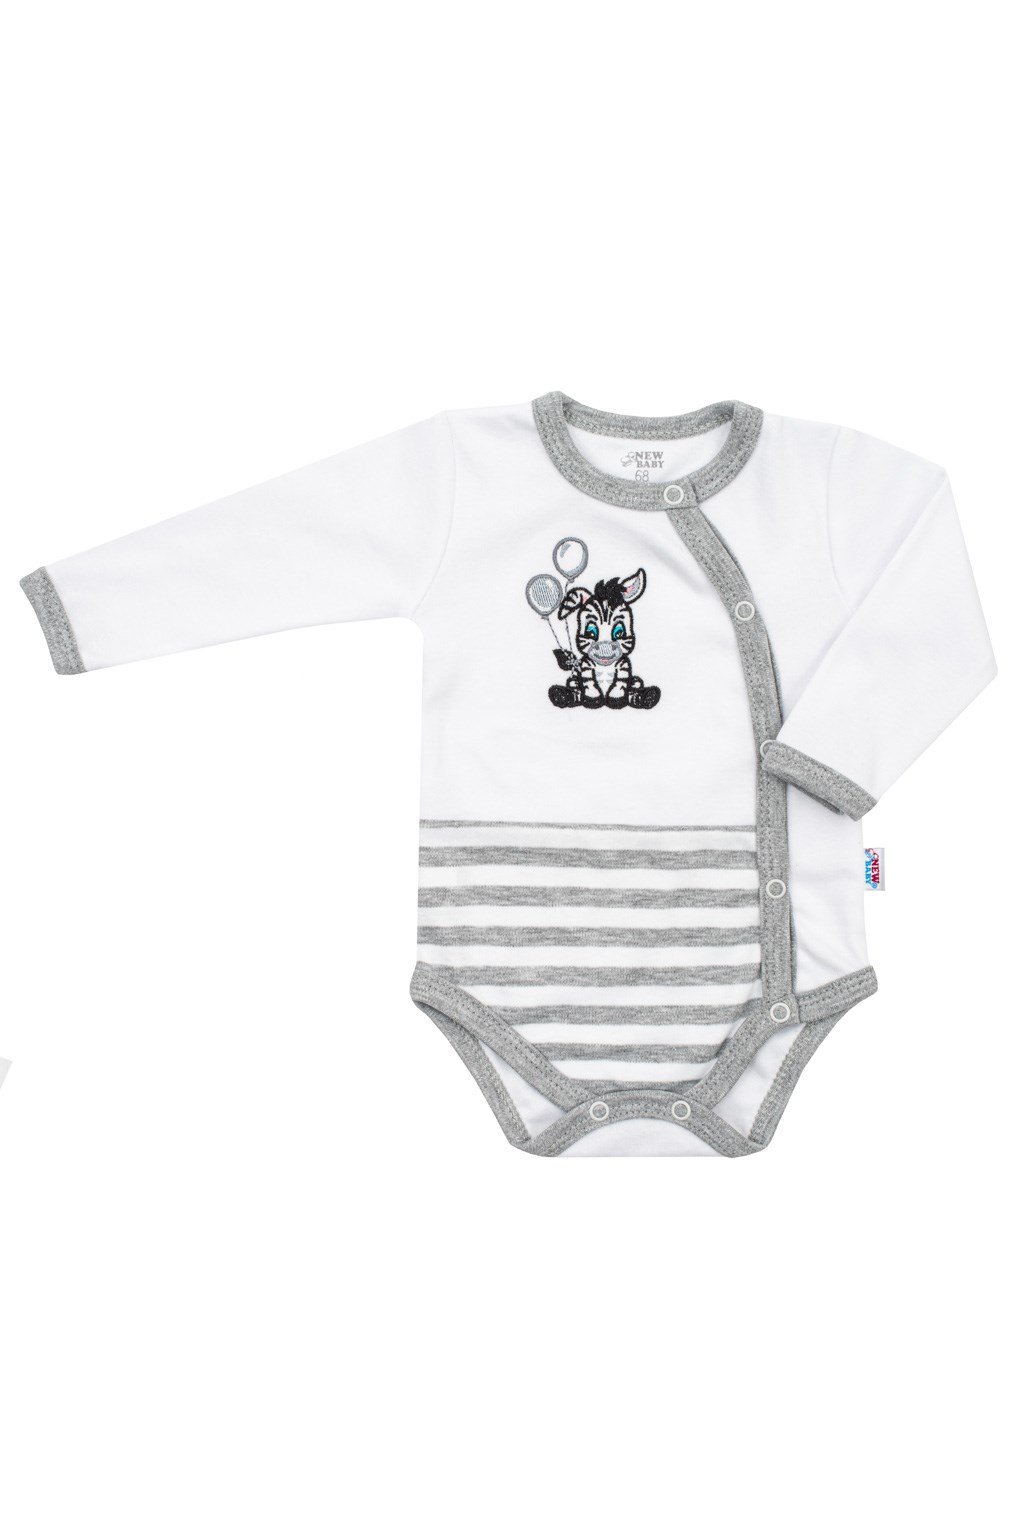 Detské bavlnené body s rozopínaním Zebra exclusive